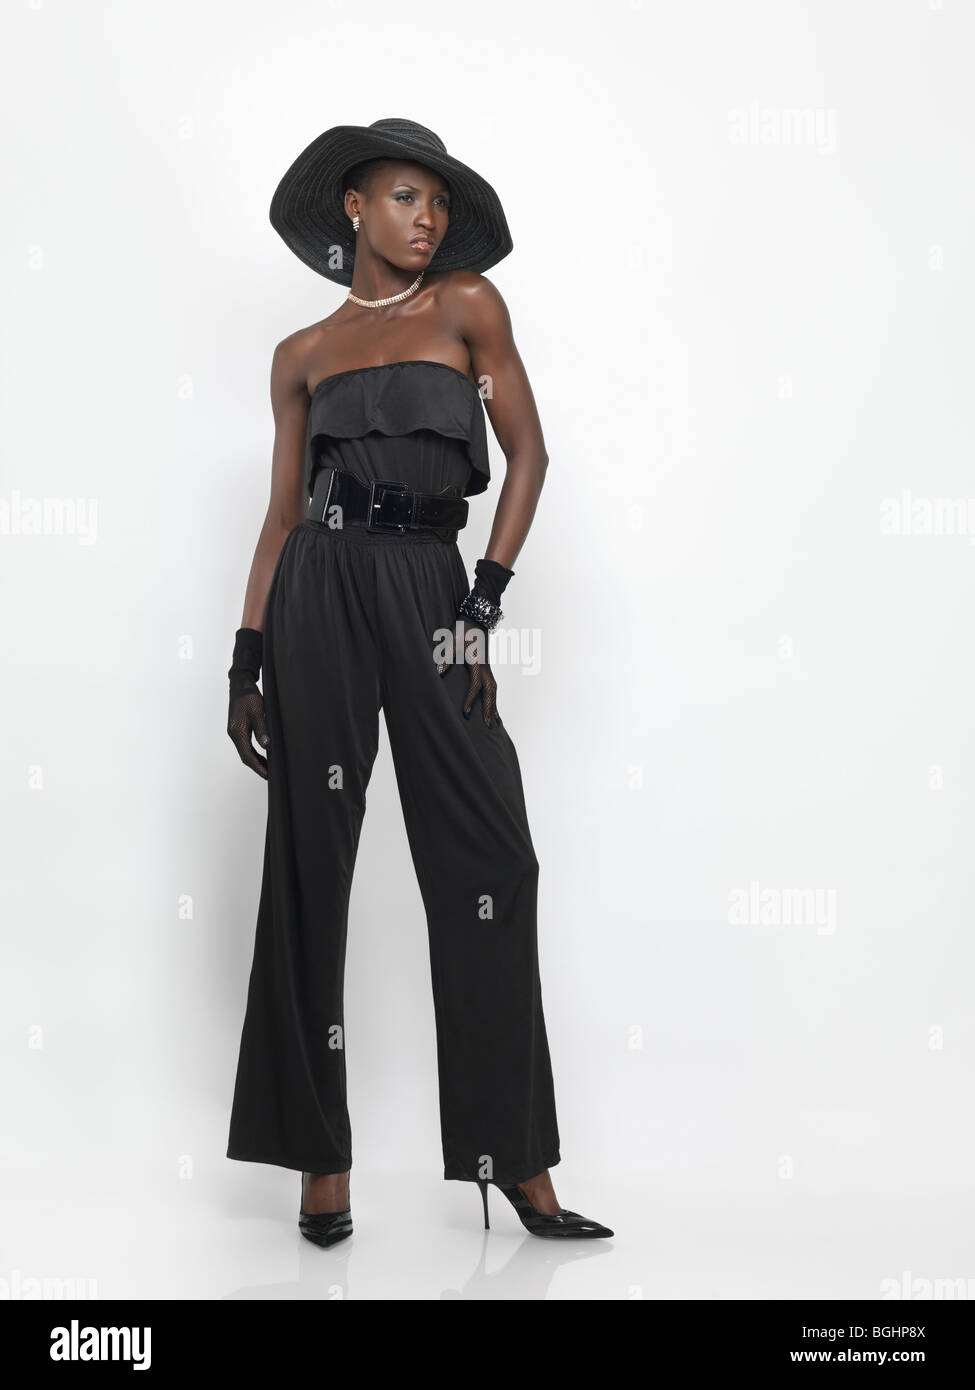 Lizenz erhältlich unter MaximImages.com elegantes junges Modemodell, das schwarz isoliert auf weißem Hintergrund trägt Stockfoto